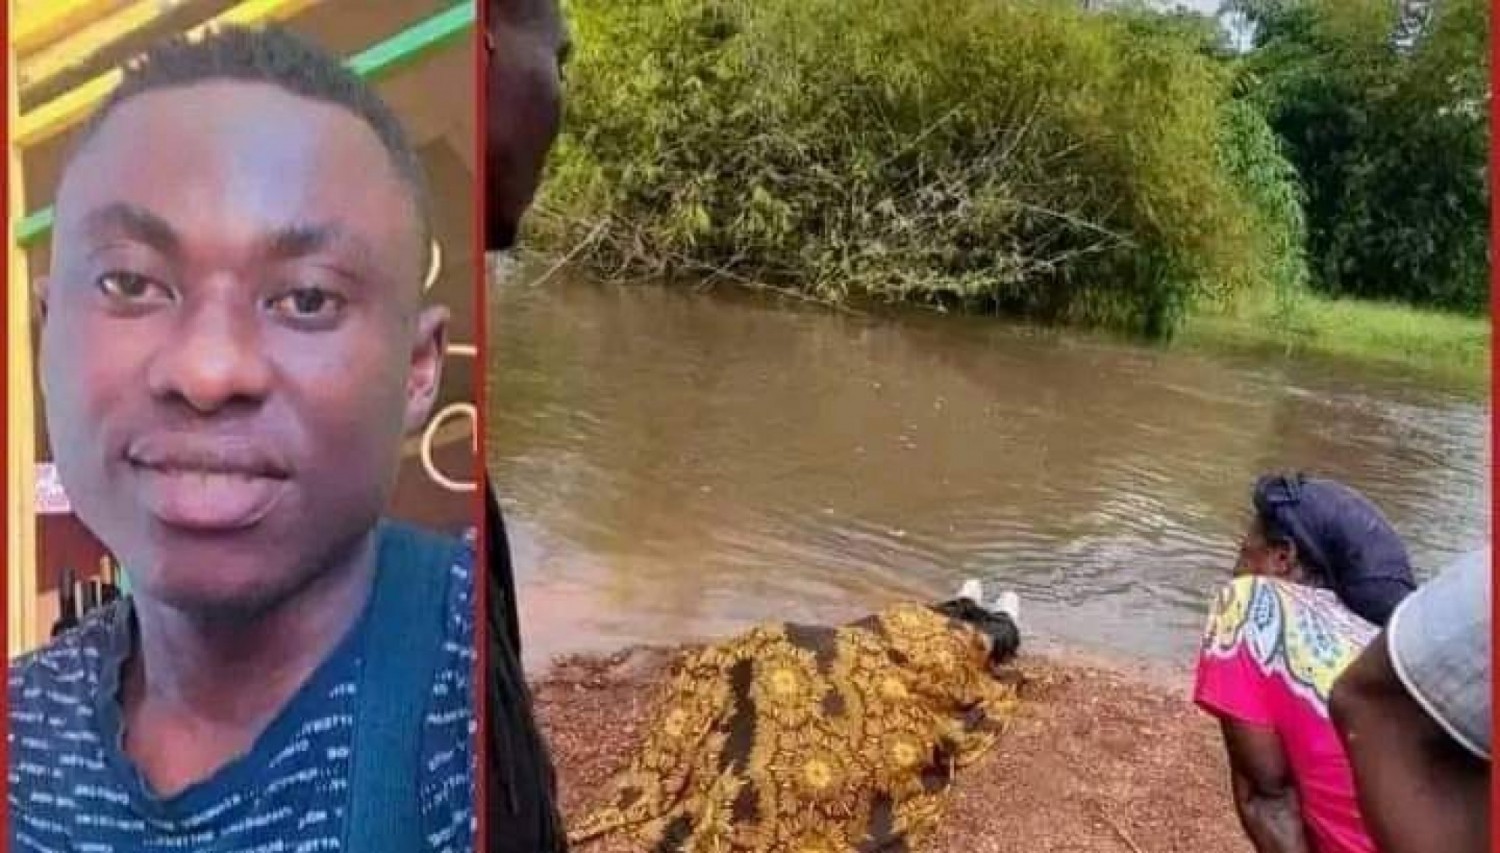 Côte d'Ivoire : Affery, le corps sans vie d'un jeune élève de la 1ere repêché dans une rivière